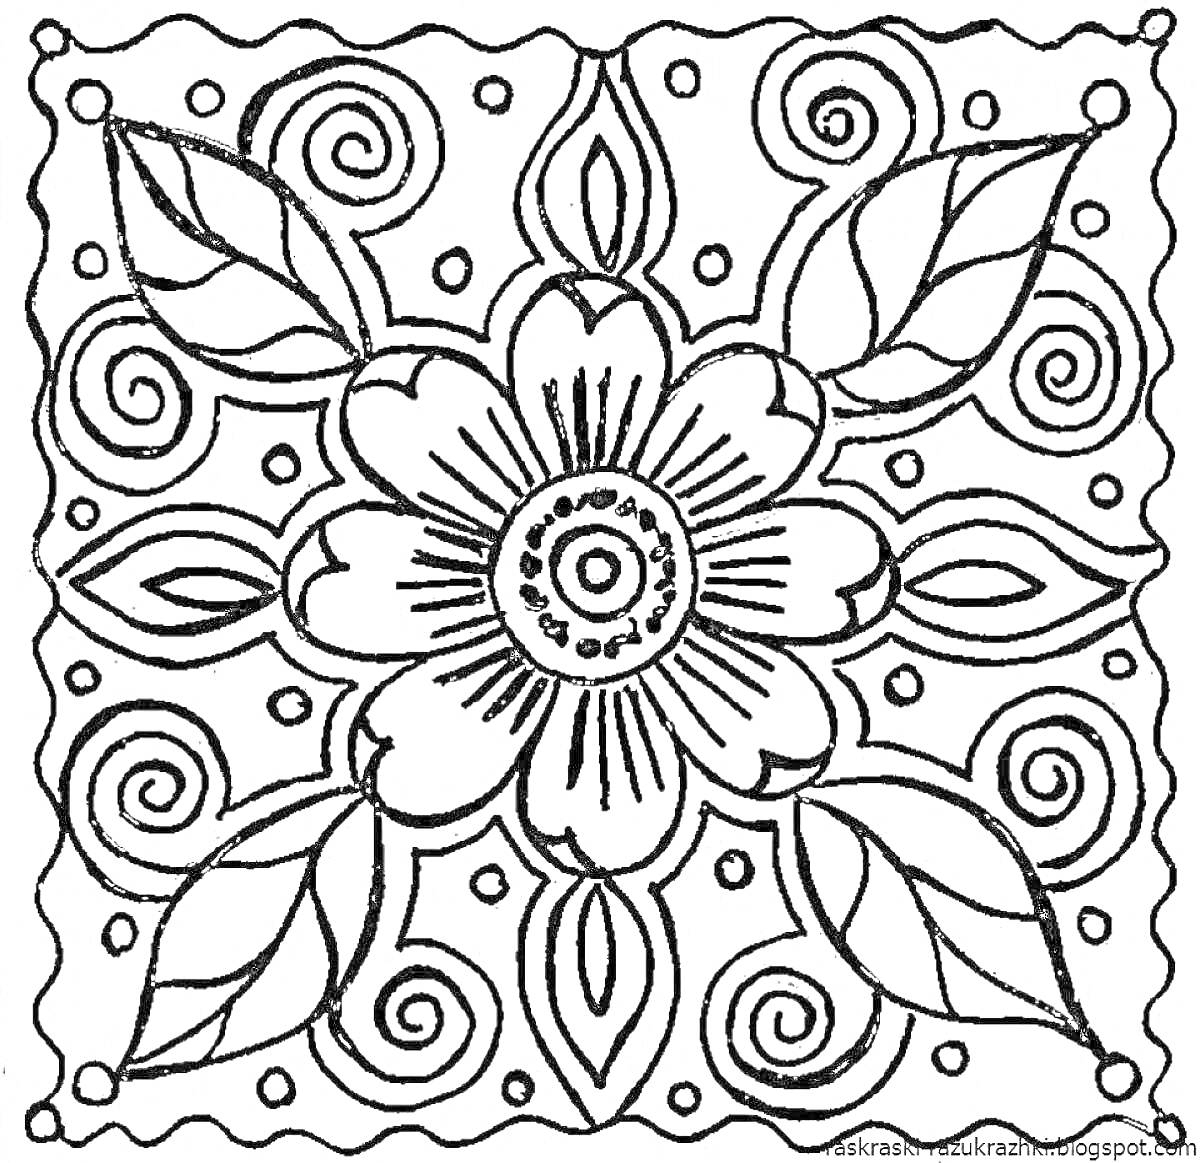 Раскраска Цветочный орнамент с листьями, спиралями и волнистым узором по краям